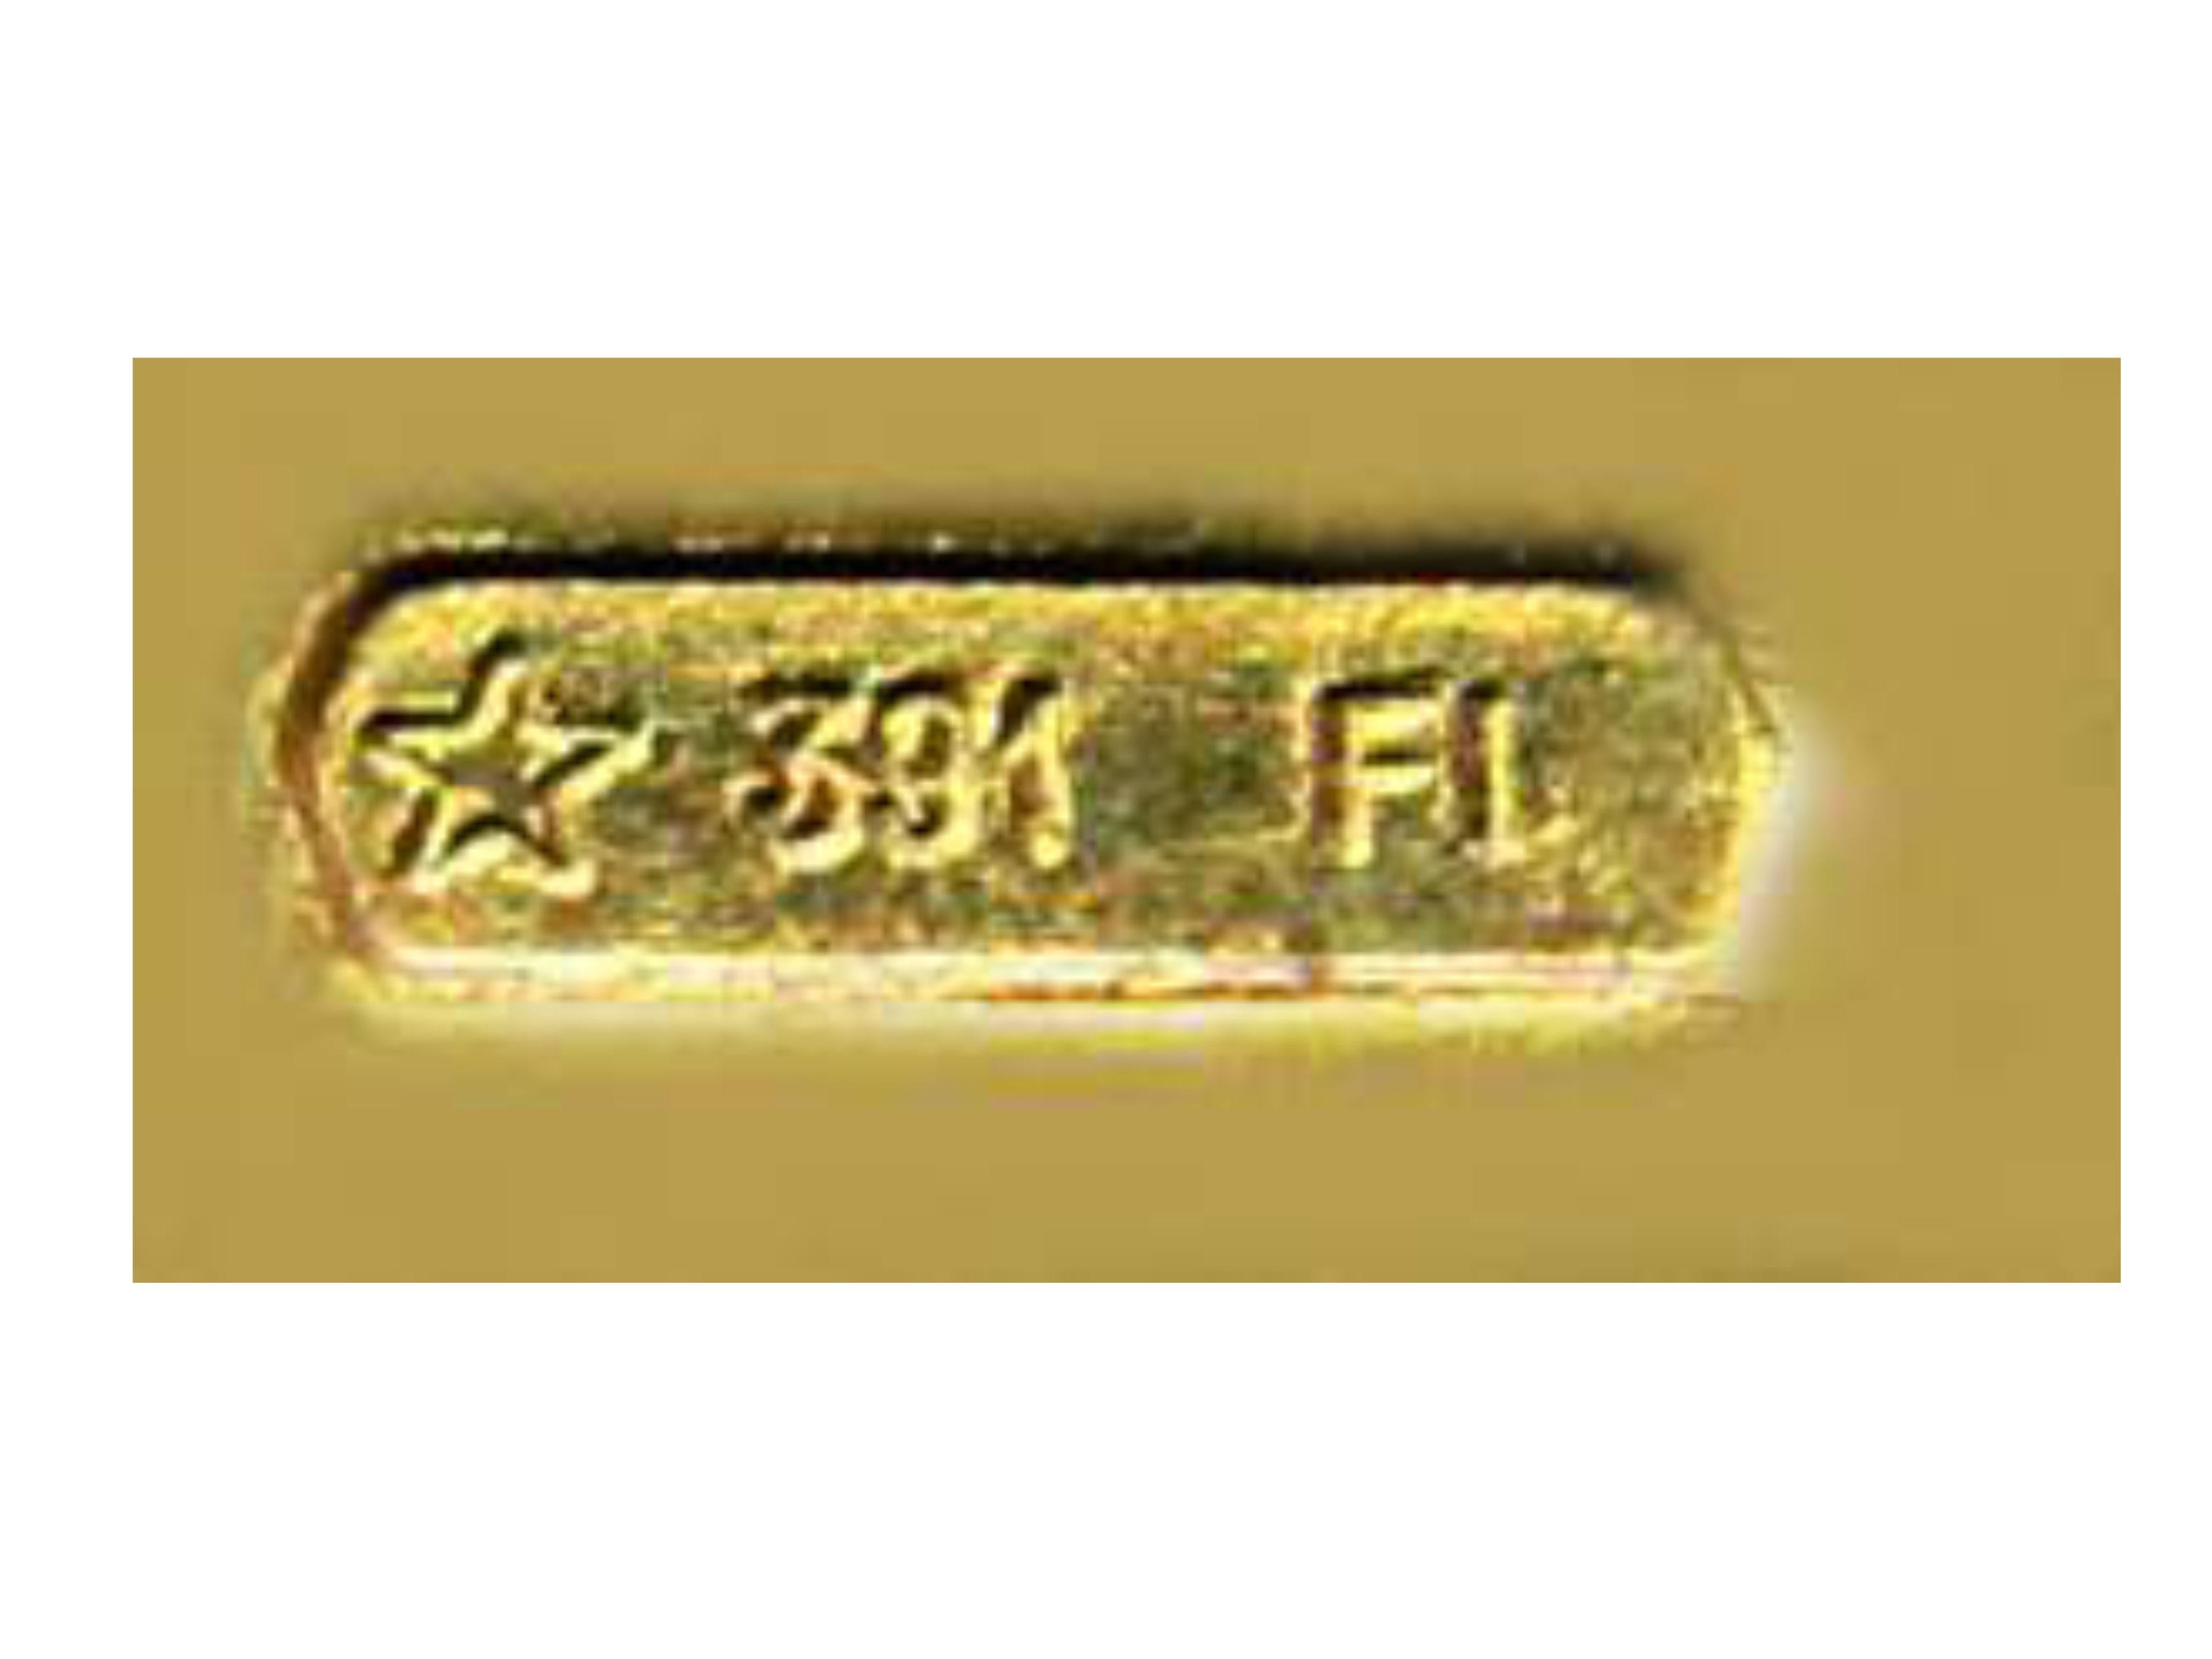 Gold Snuff Box or Pill Box Guilloche Enamel Floral Miniature, White and Blu Salimbeni